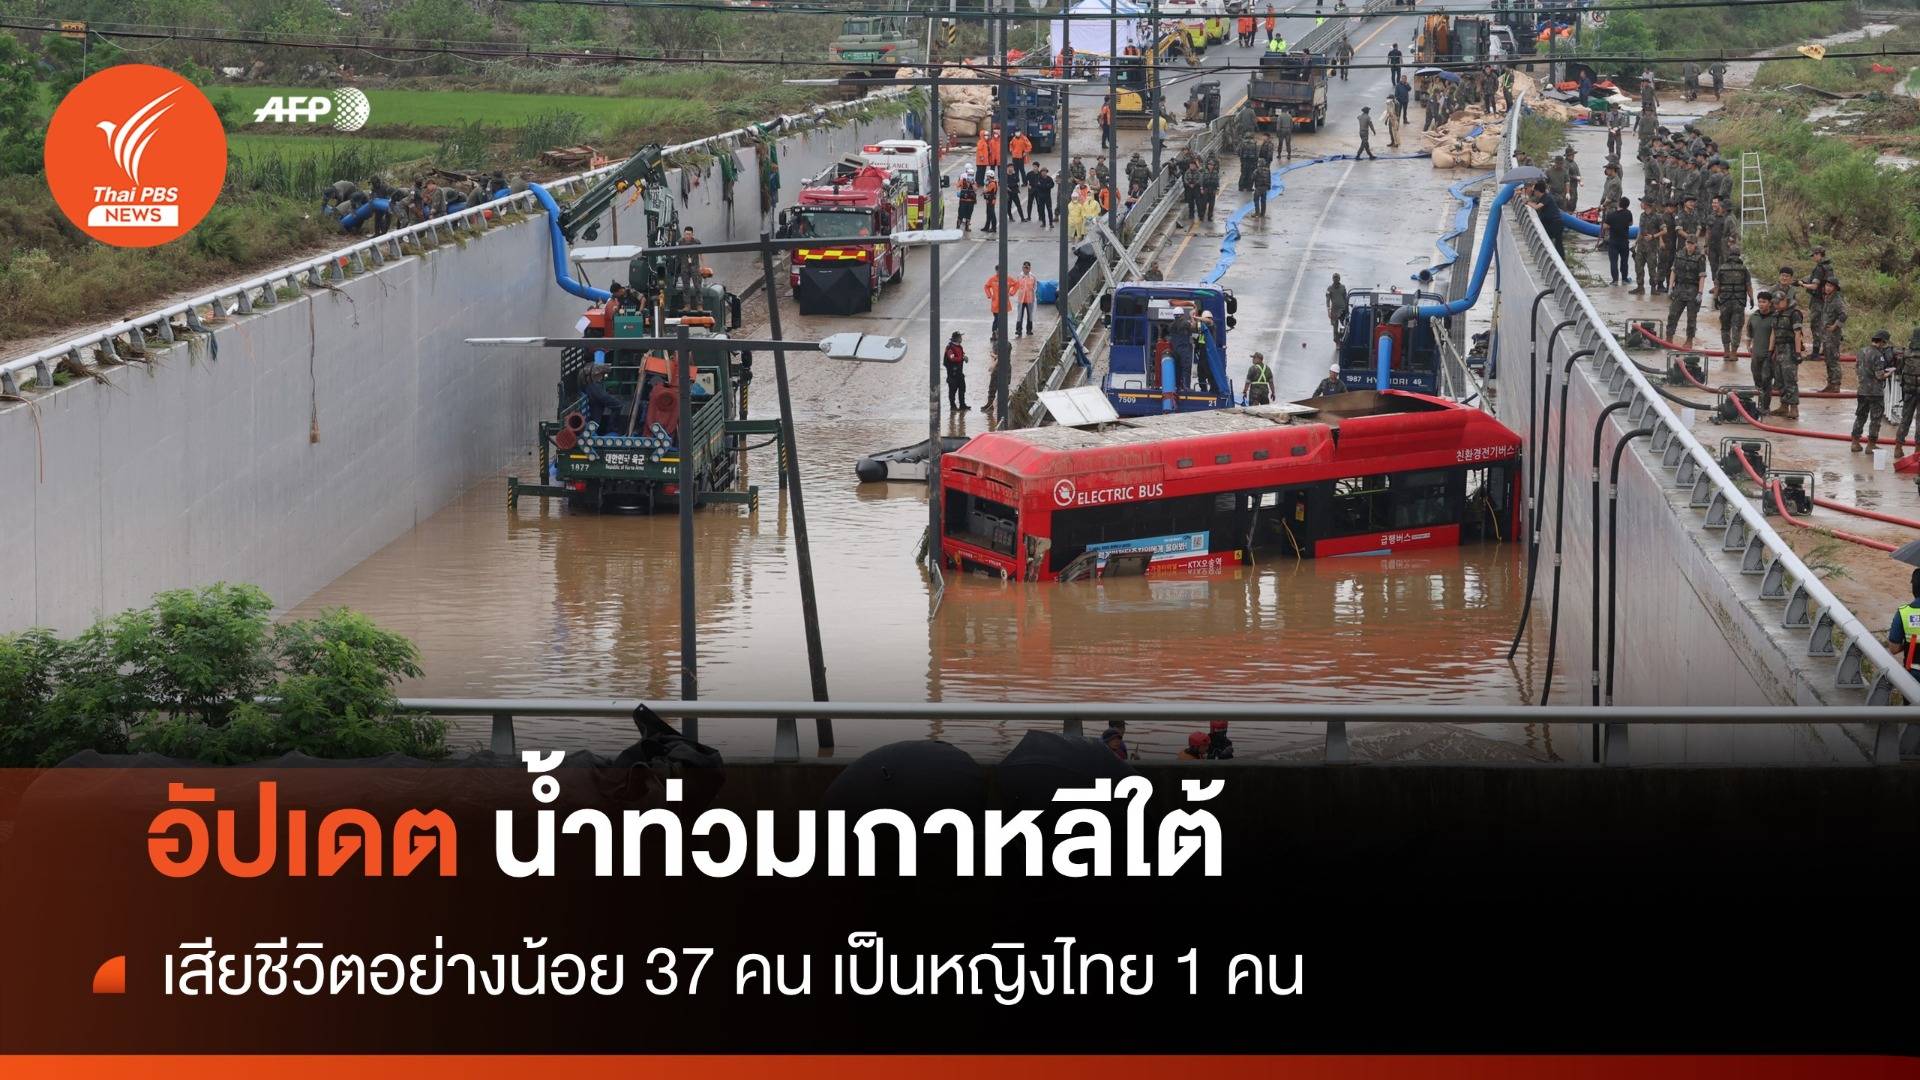 ฝนถล่ม เกาหลีใต้น้ำท่วมหนัก เสียชีวิตแล้ว 37 คน หญิงไทย 1 คน